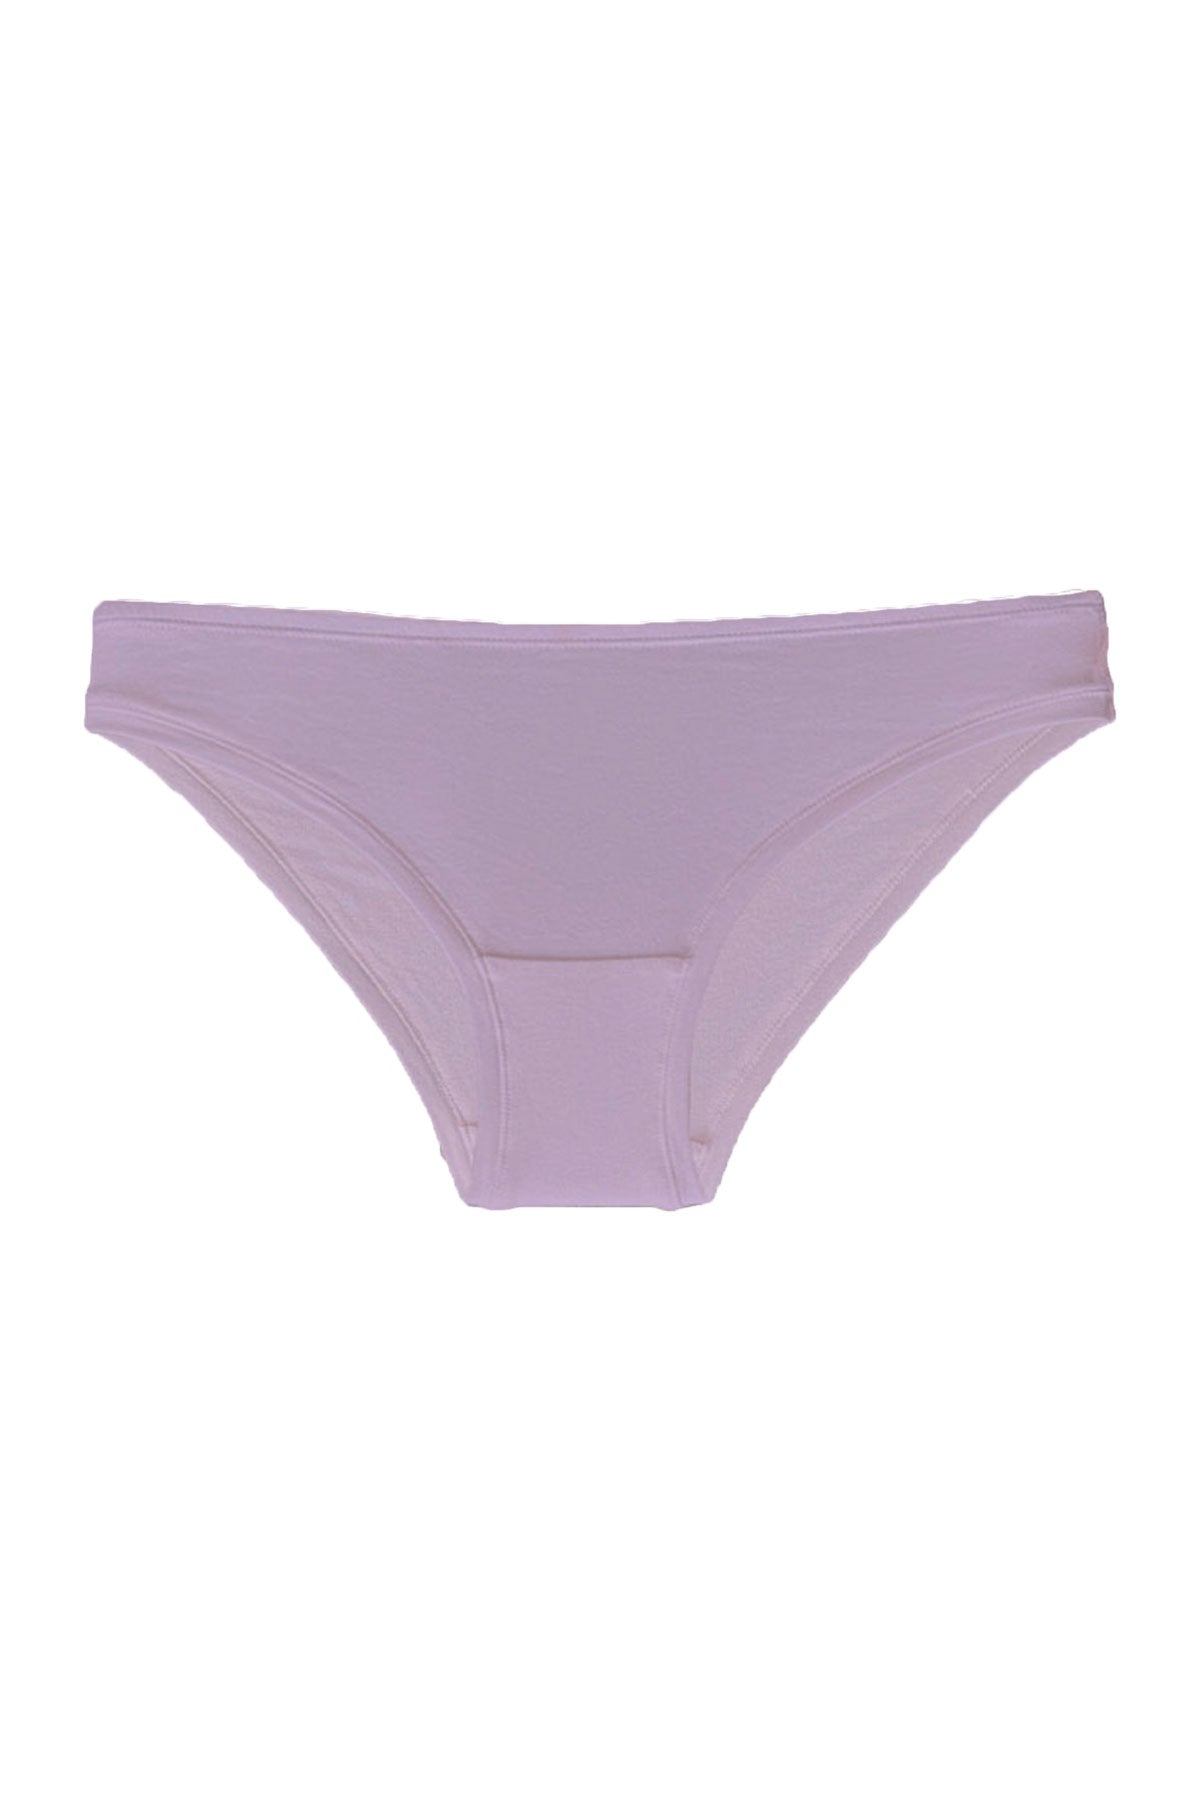 Bikini style organic cotton brief in lavender – Eco Intimates